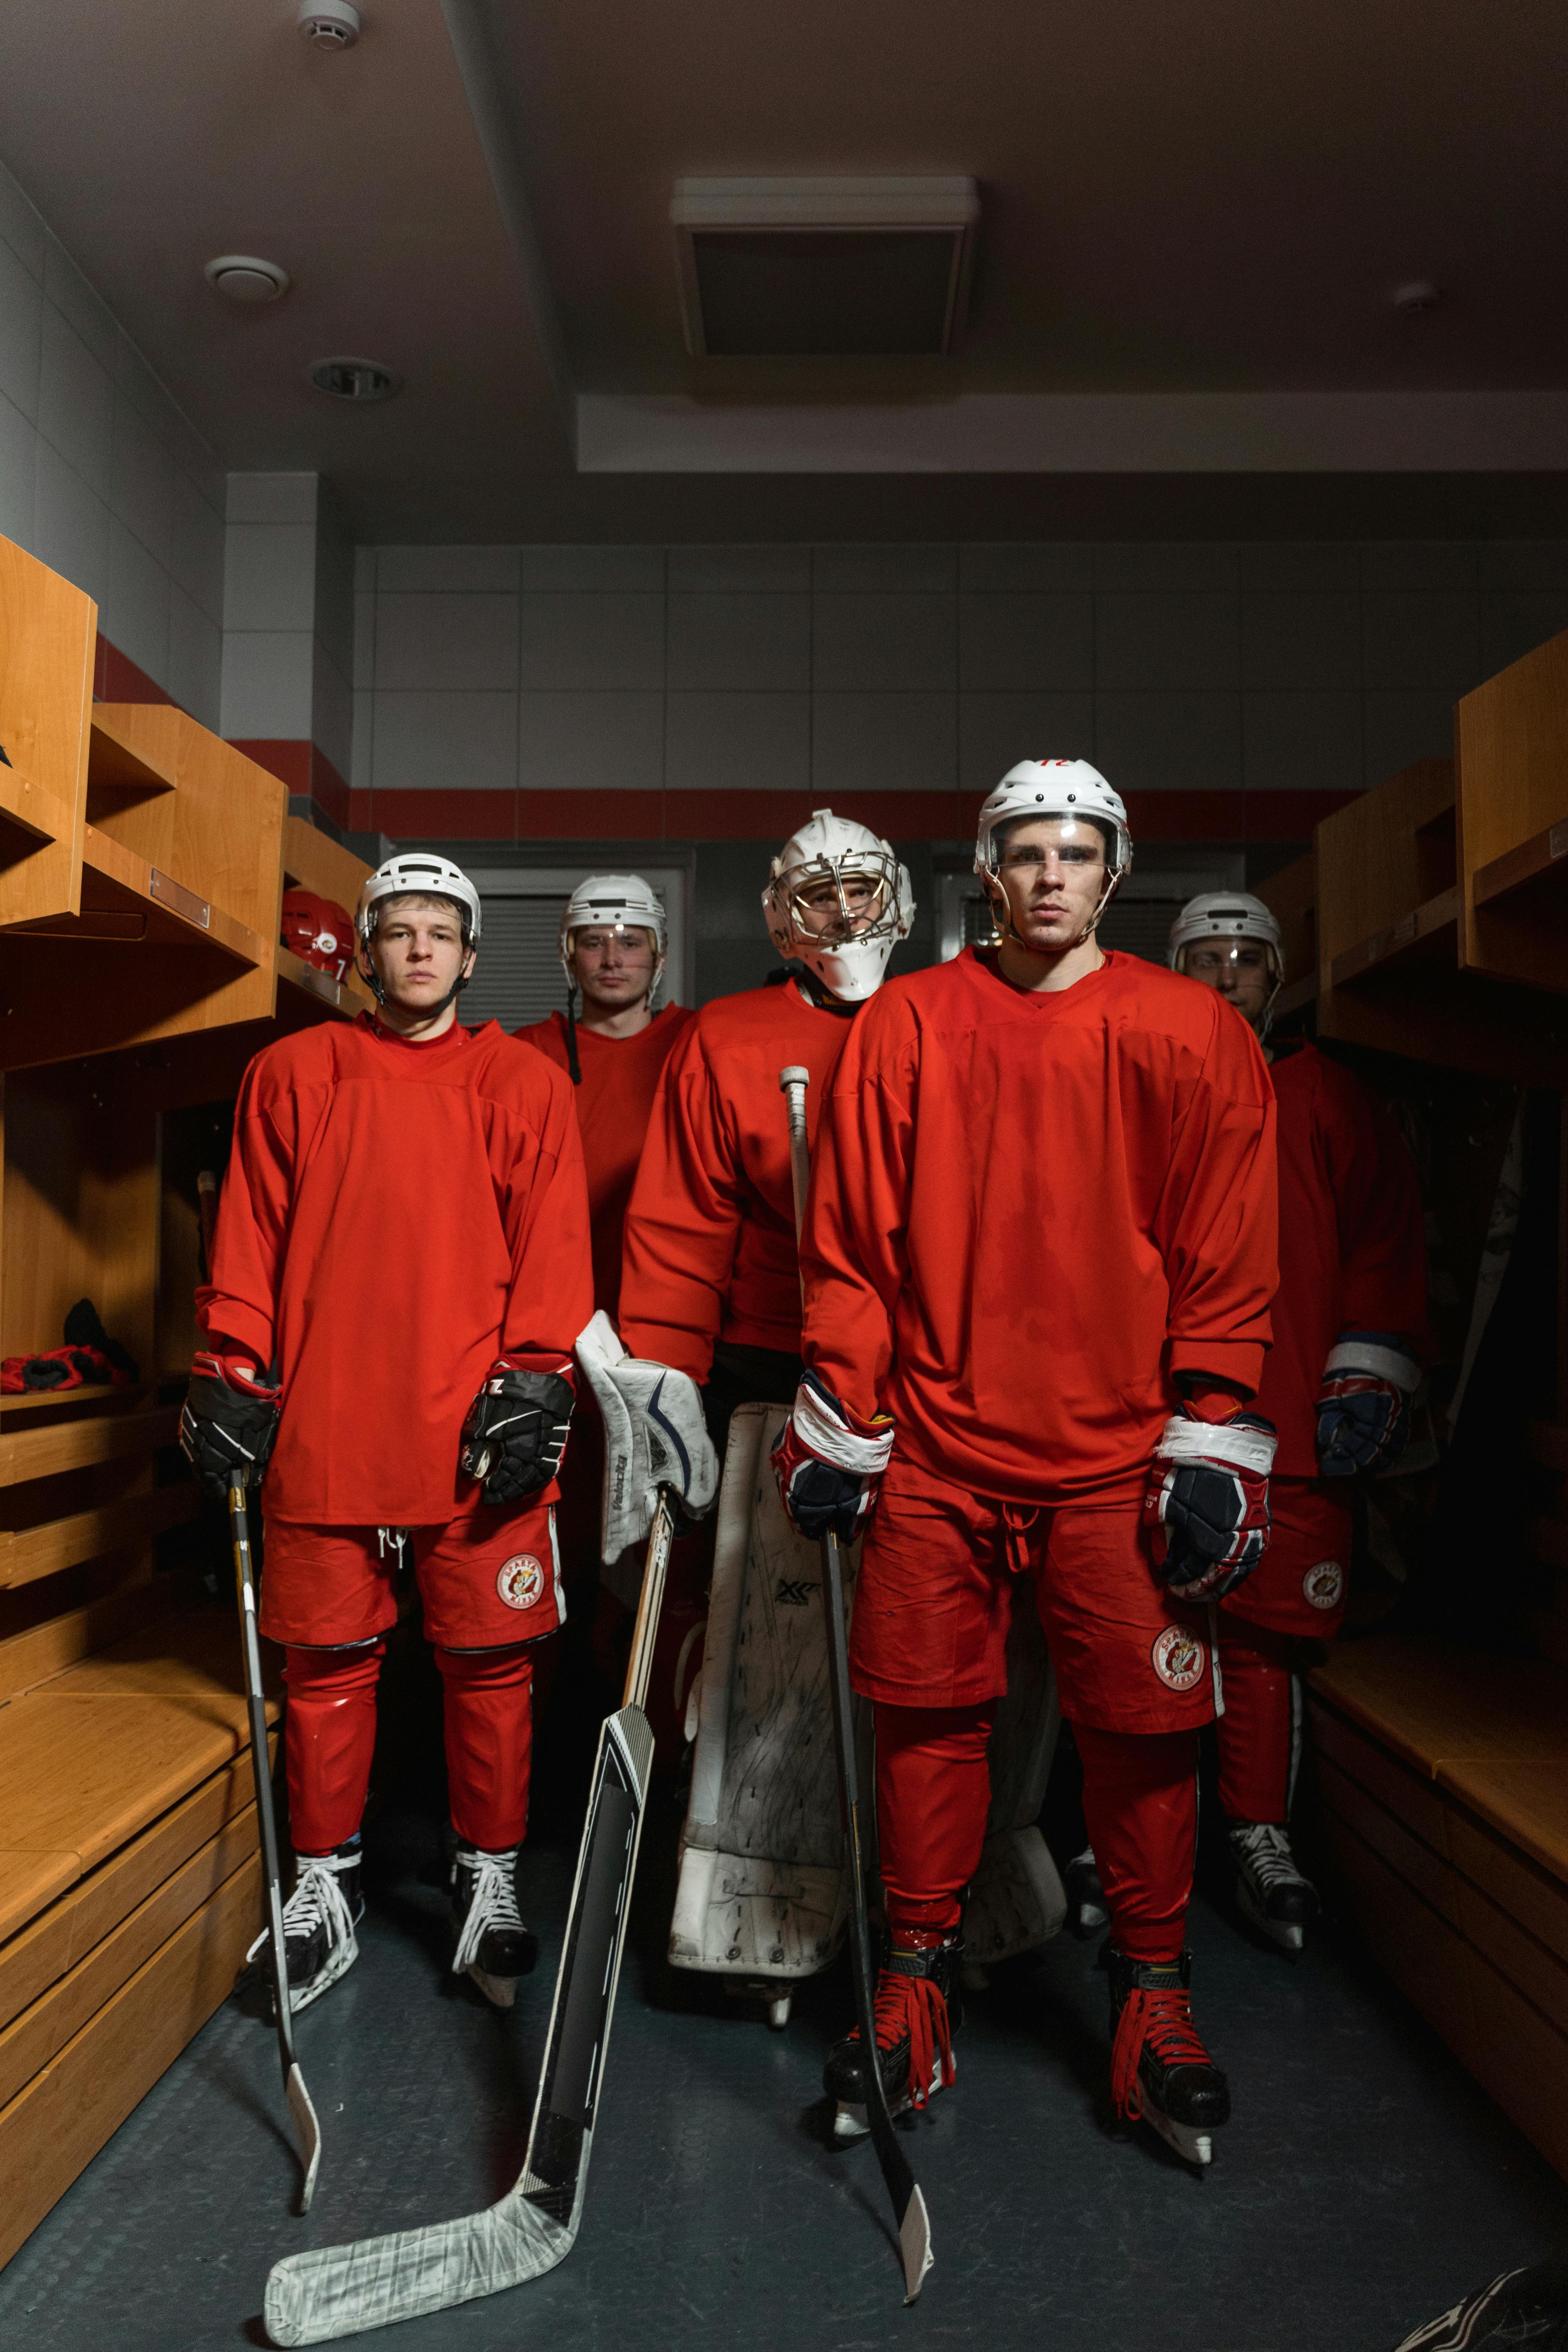 group of men wearing hockey gear